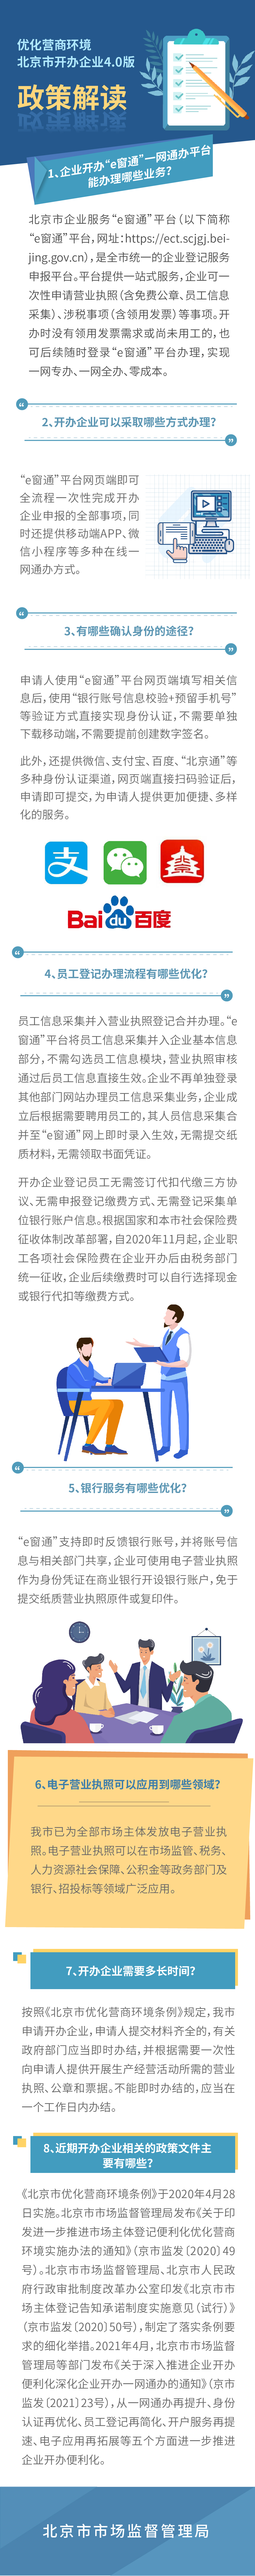 图解：优化营商环境 北京市开办企业4.0版.jpg